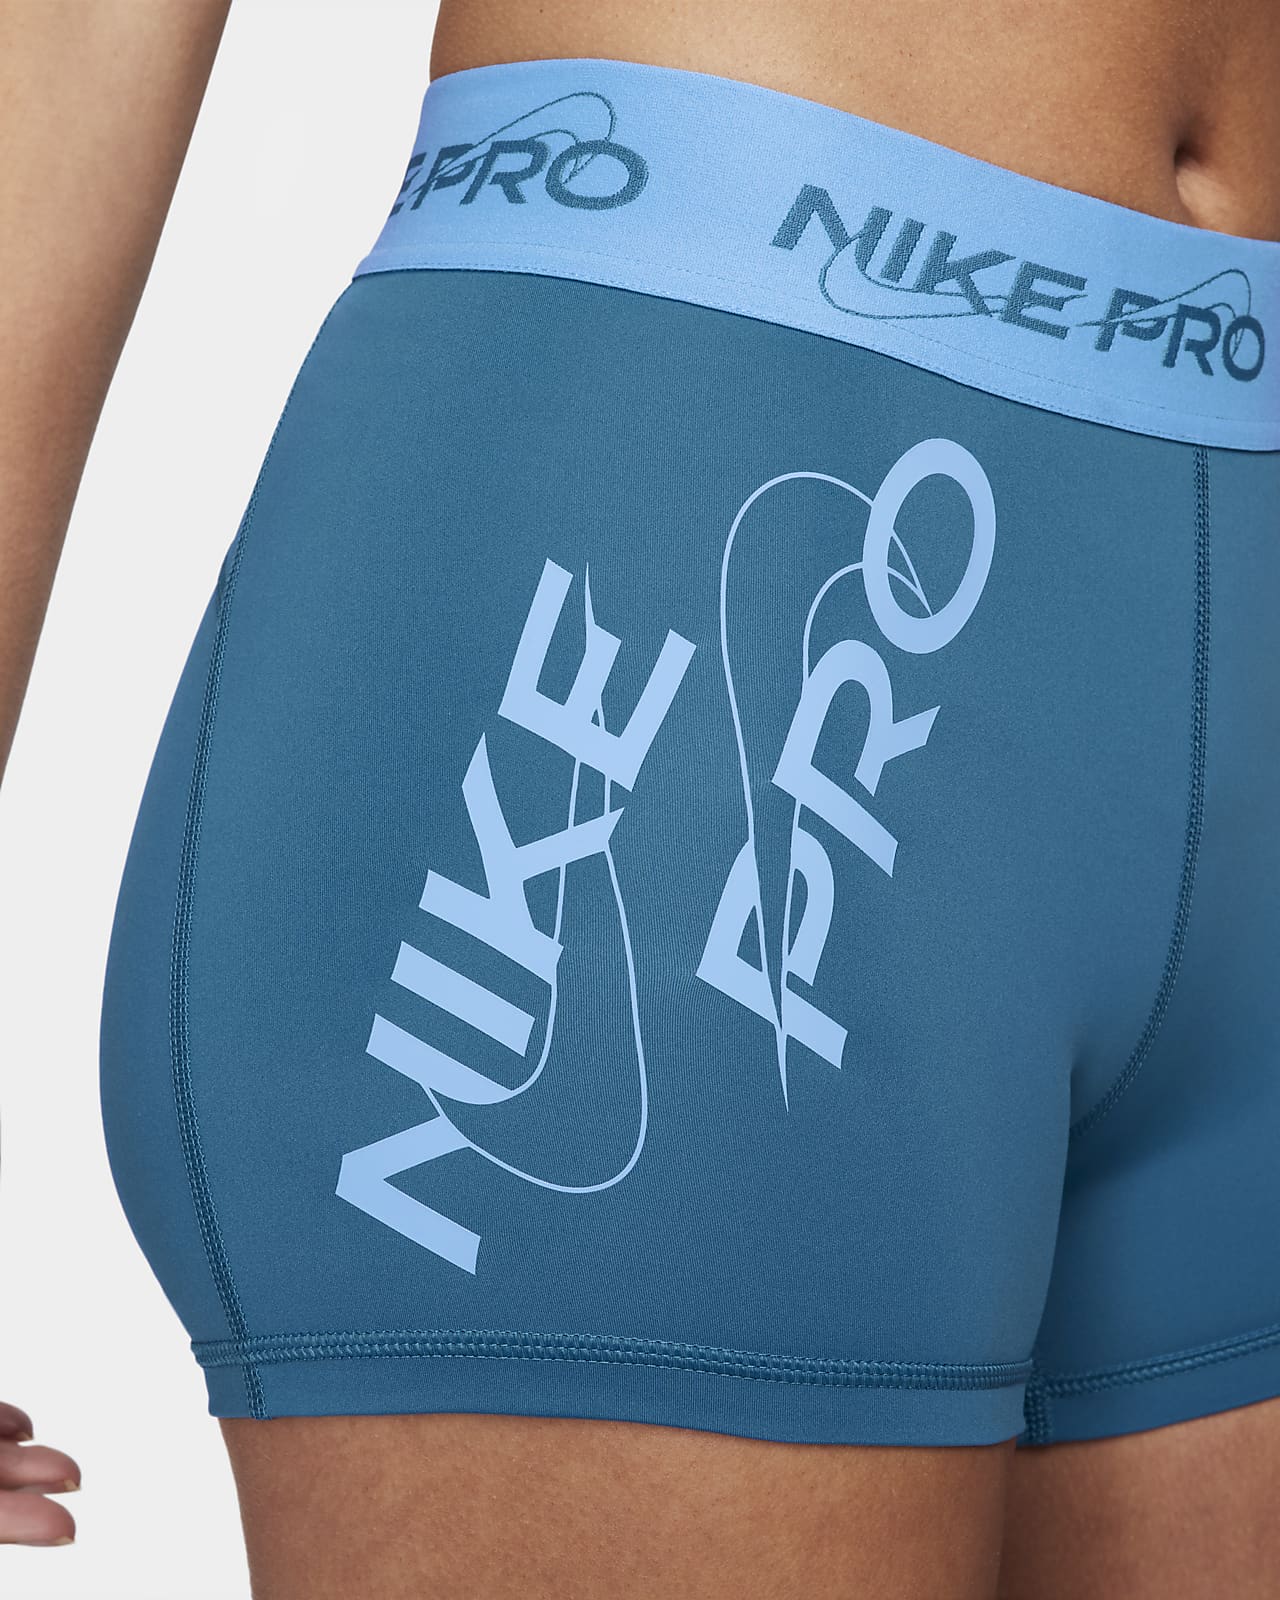 Nike Pro Women's Mid Rise Tight Fit 3” Training Shorts. Noise Aqua